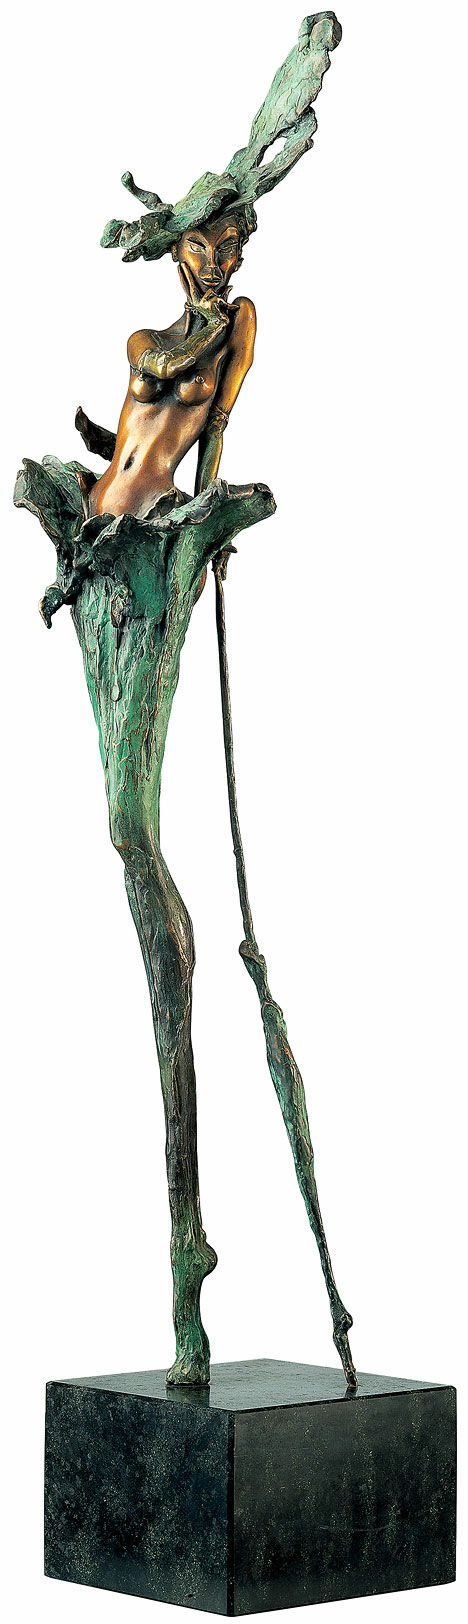 Skulptur "When the lady smiles" (1995), Bronze von Marc van Megen